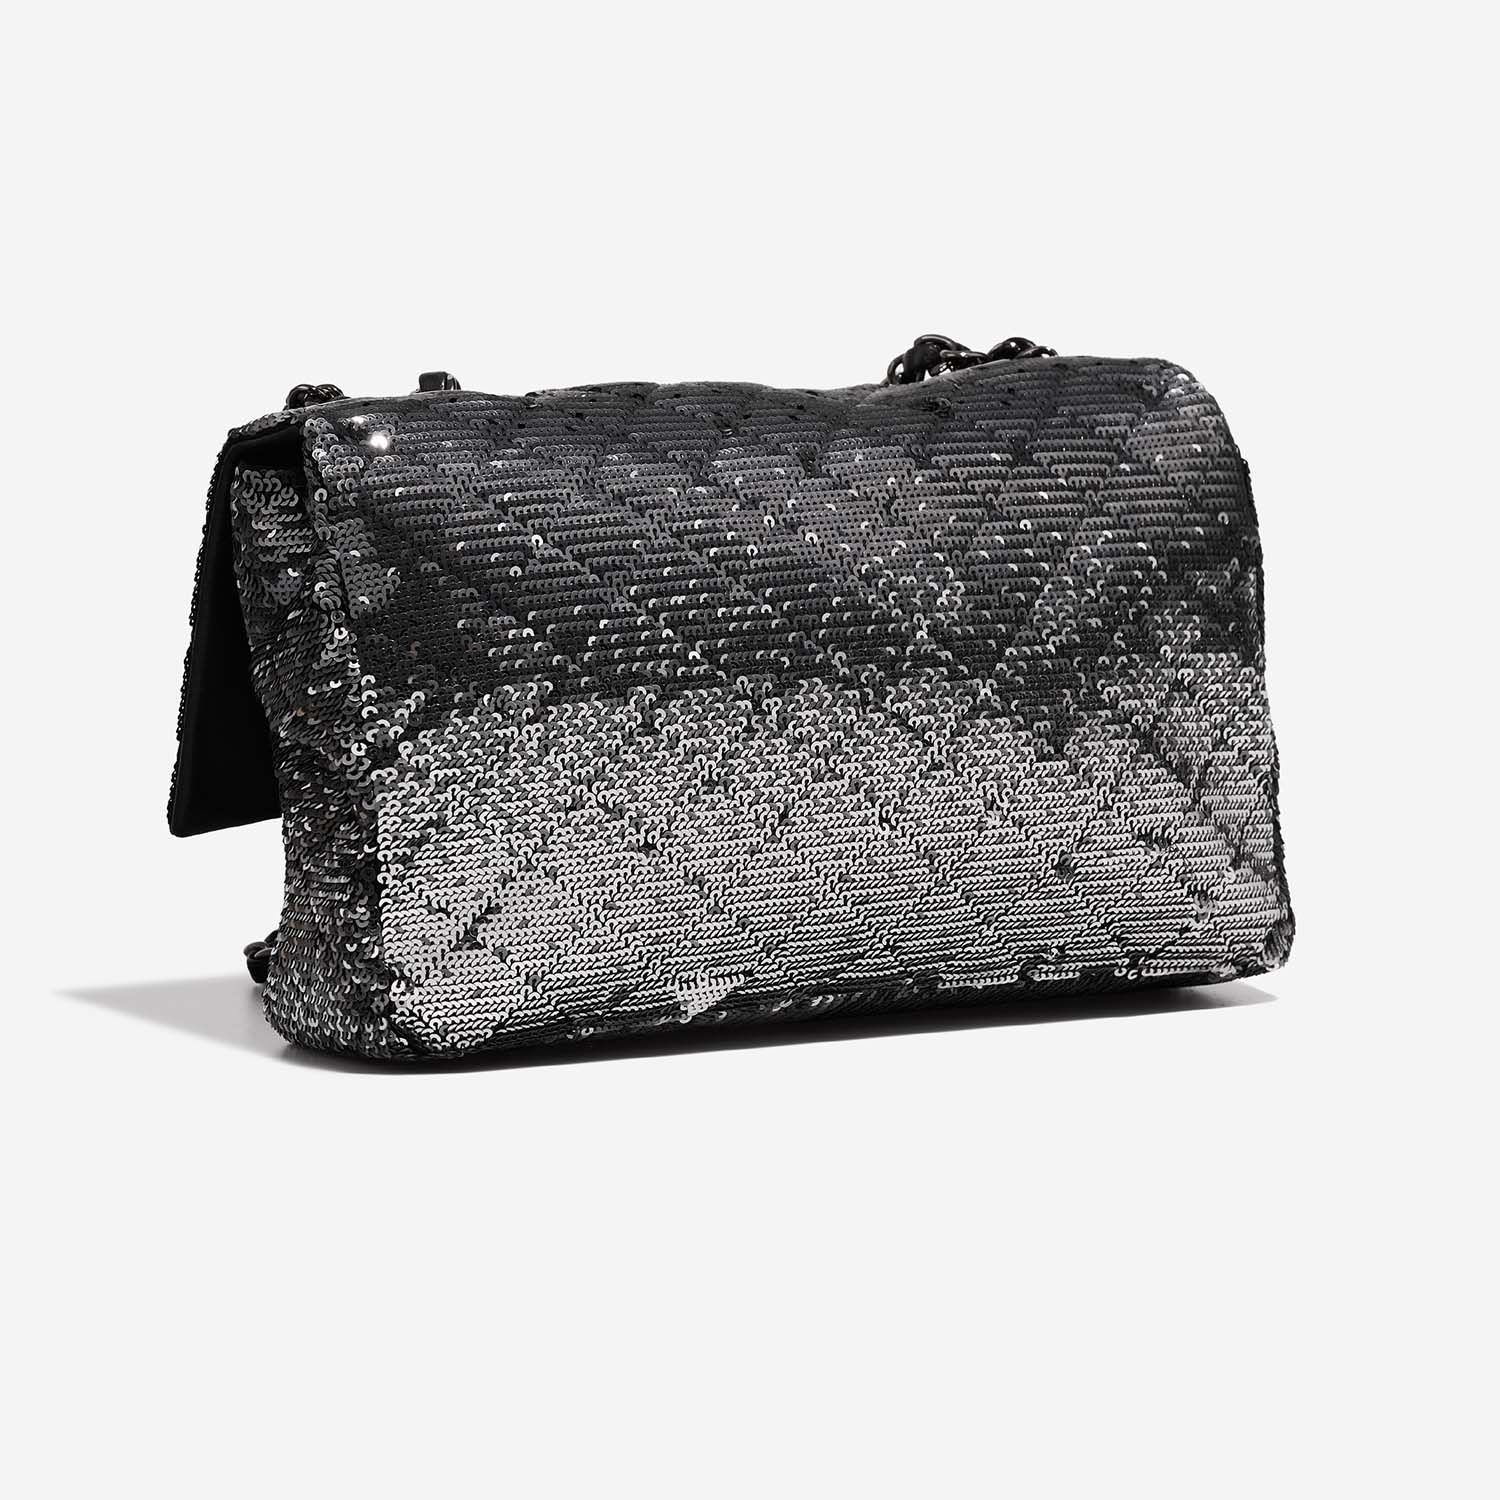 Chanel Timeless Medium Black-Silver Side Back | Verkaufen Sie Ihre Designer-Tasche auf Saclab.com